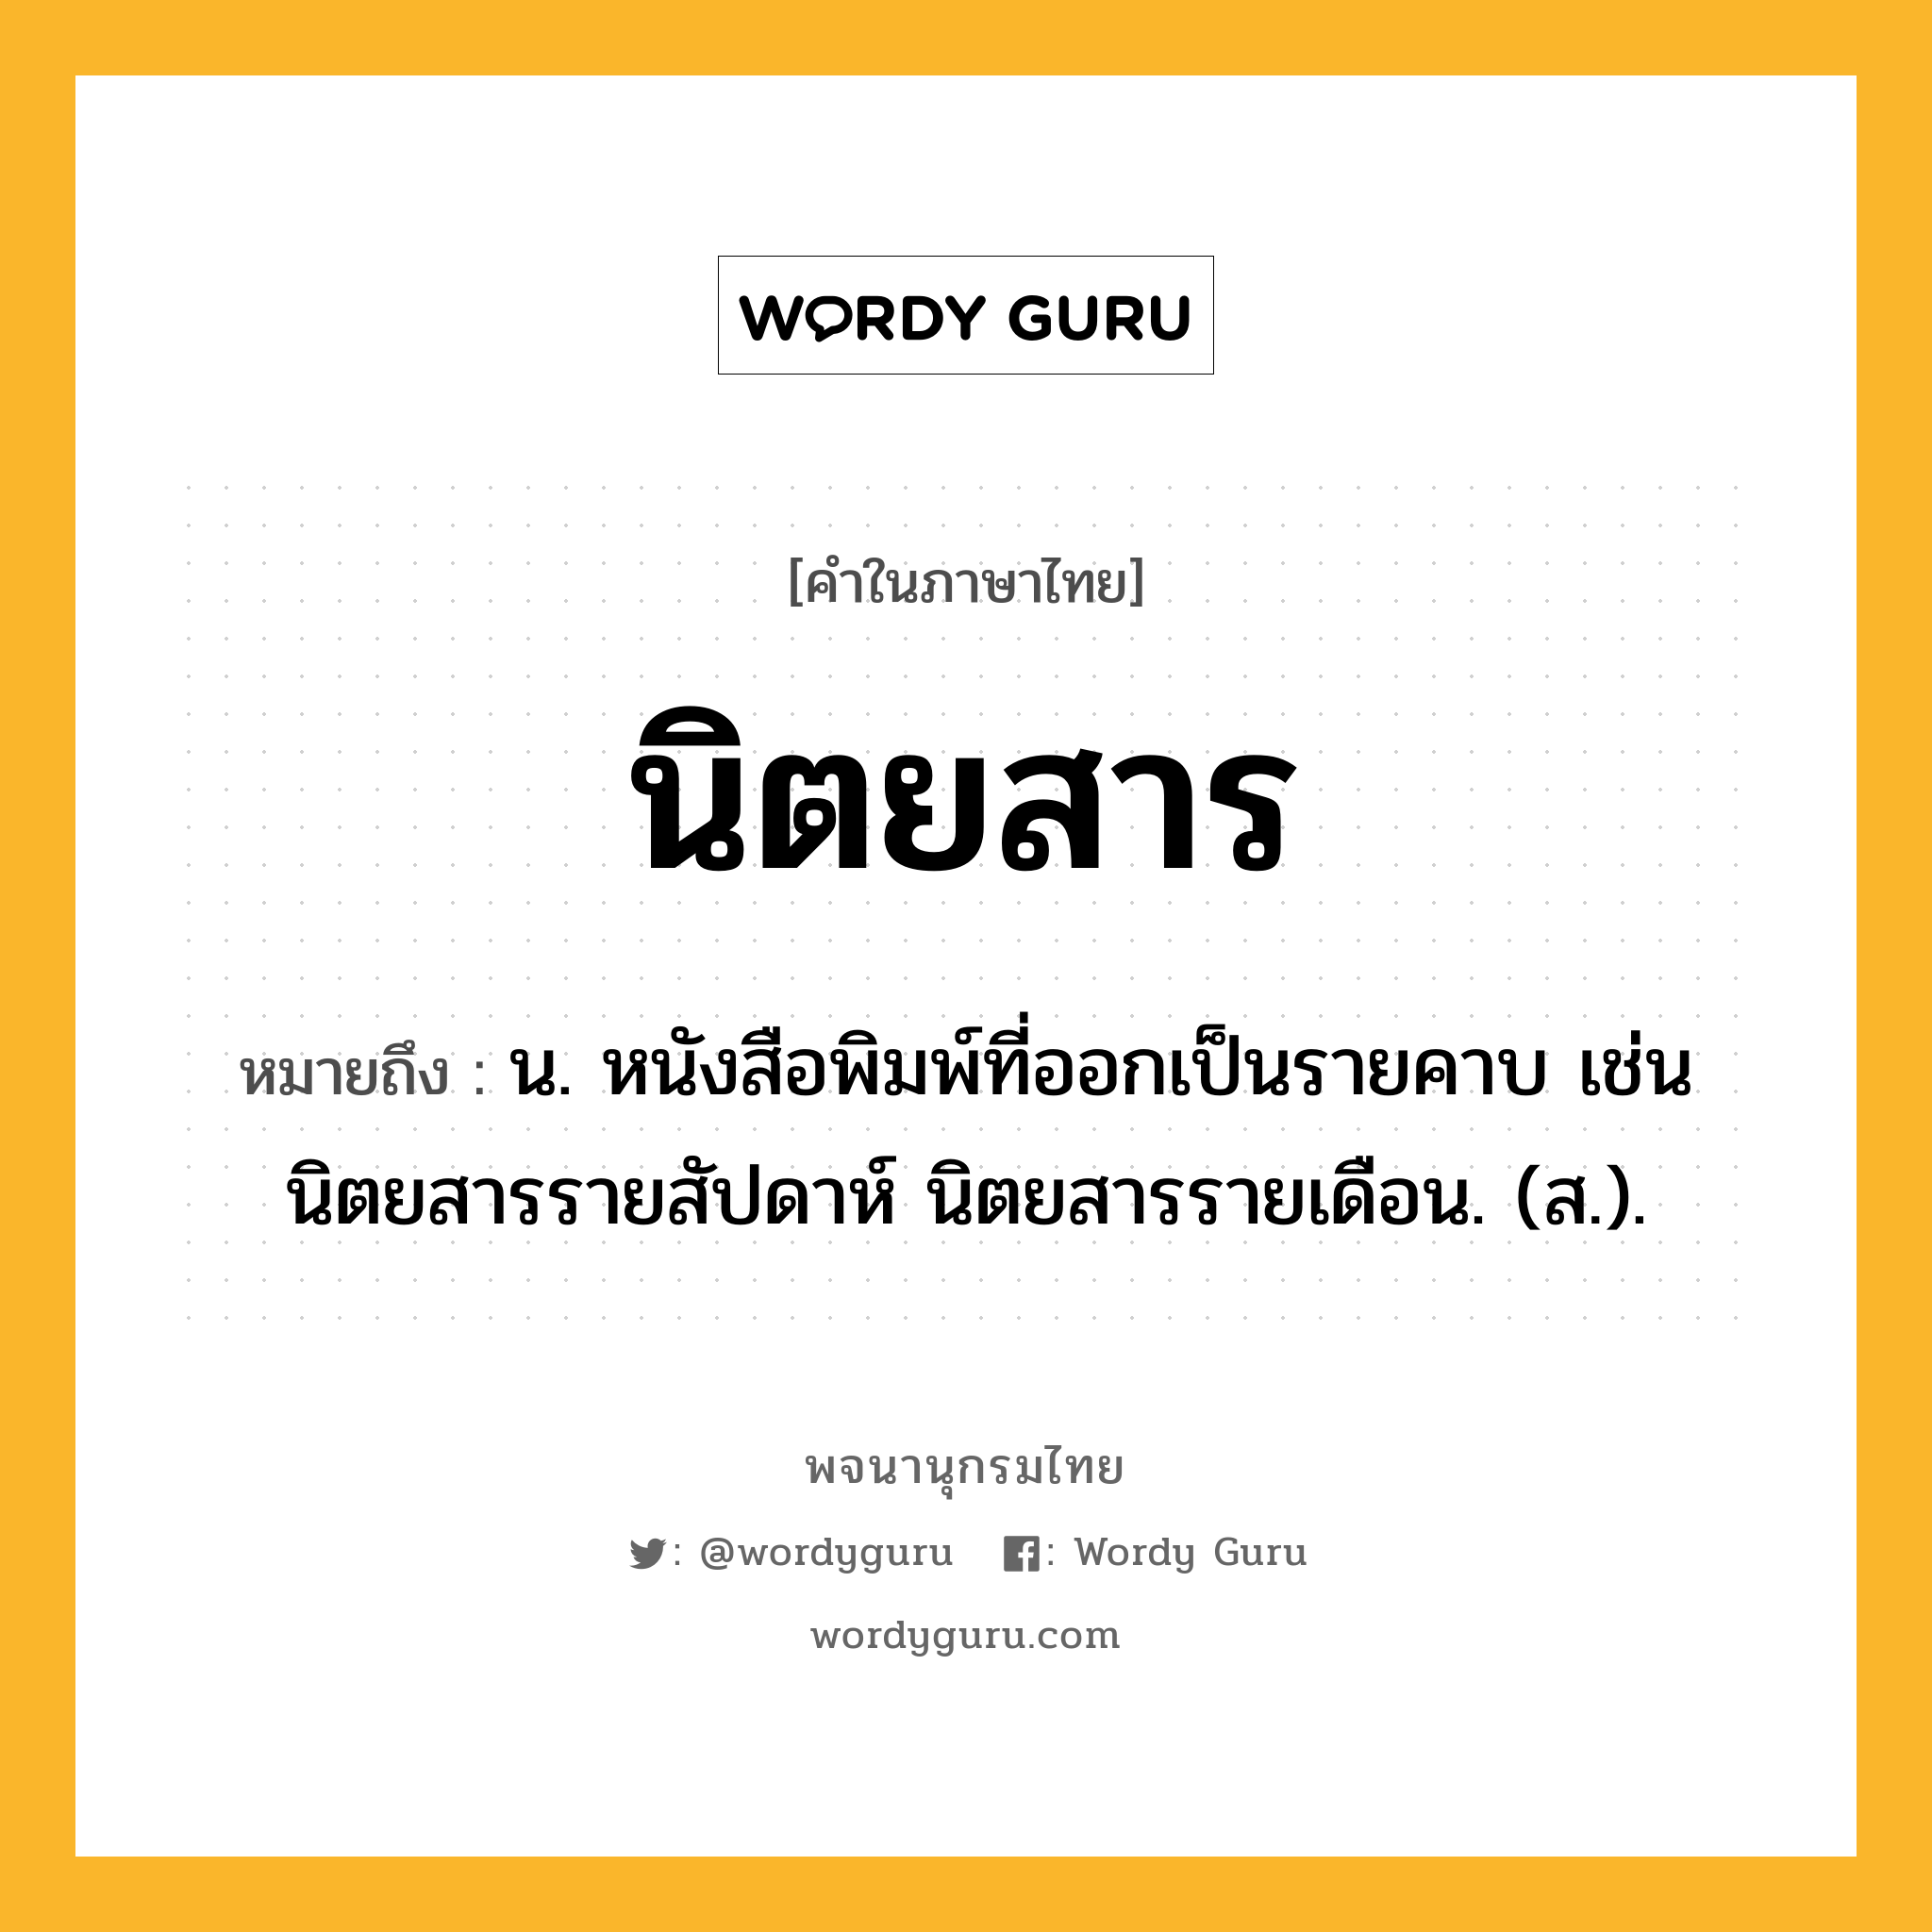 นิตยสาร หมายถึงอะไร?, คำในภาษาไทย นิตยสาร หมายถึง น. หนังสือพิมพ์ที่ออกเป็นรายคาบ เช่น นิตยสารรายสัปดาห์ นิตยสารรายเดือน. (ส.).